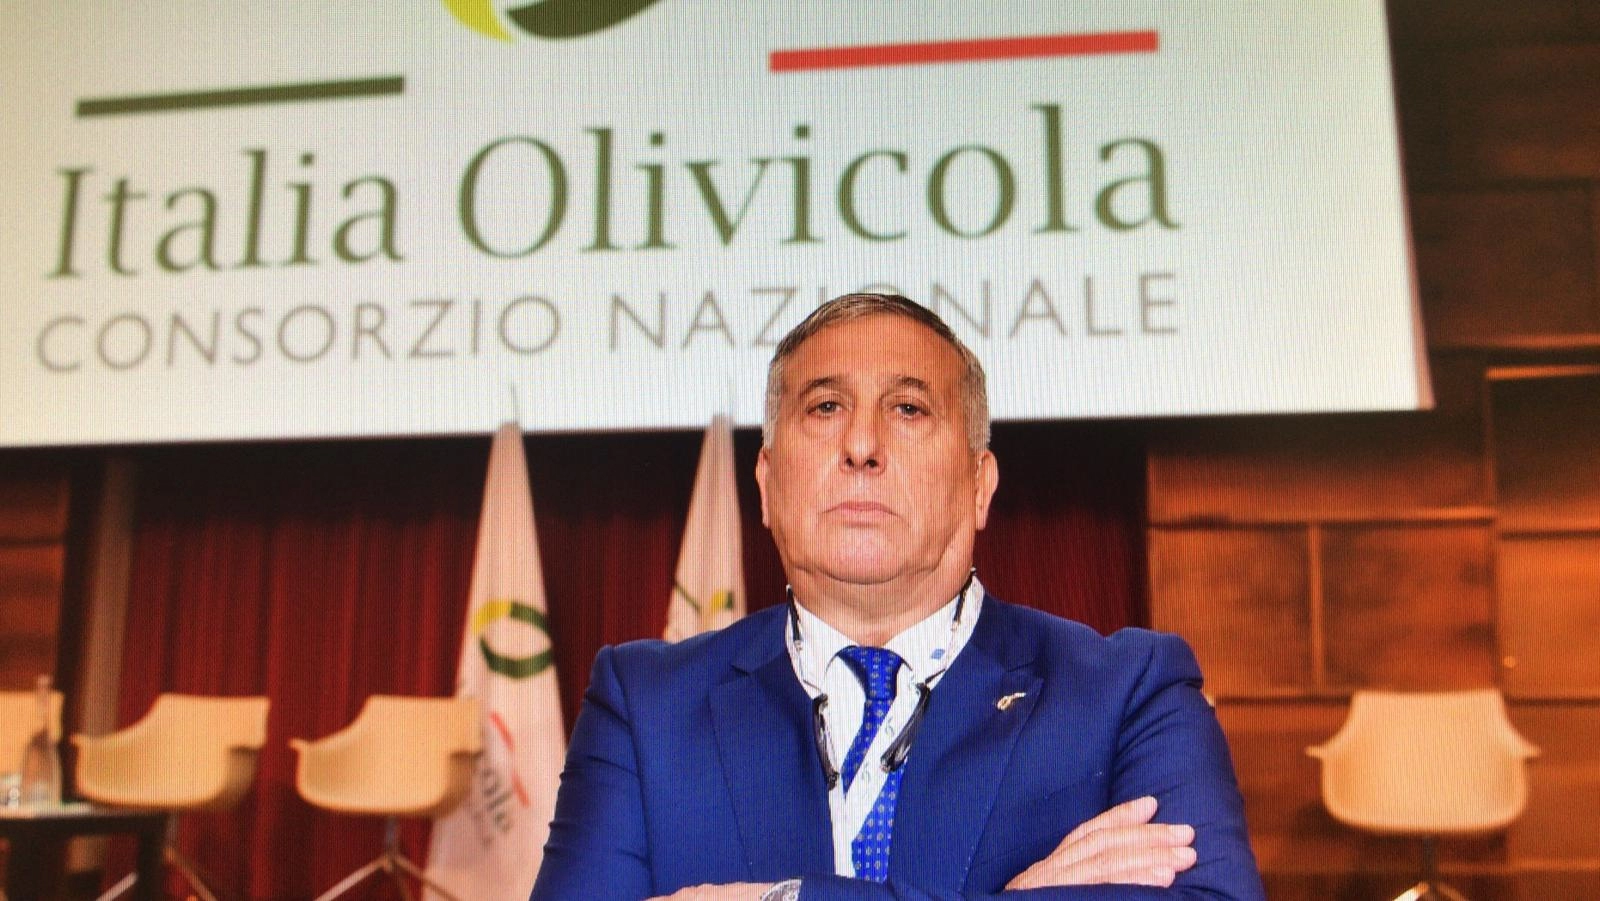 Gennaro Sicolo presidente Italia Olivicola